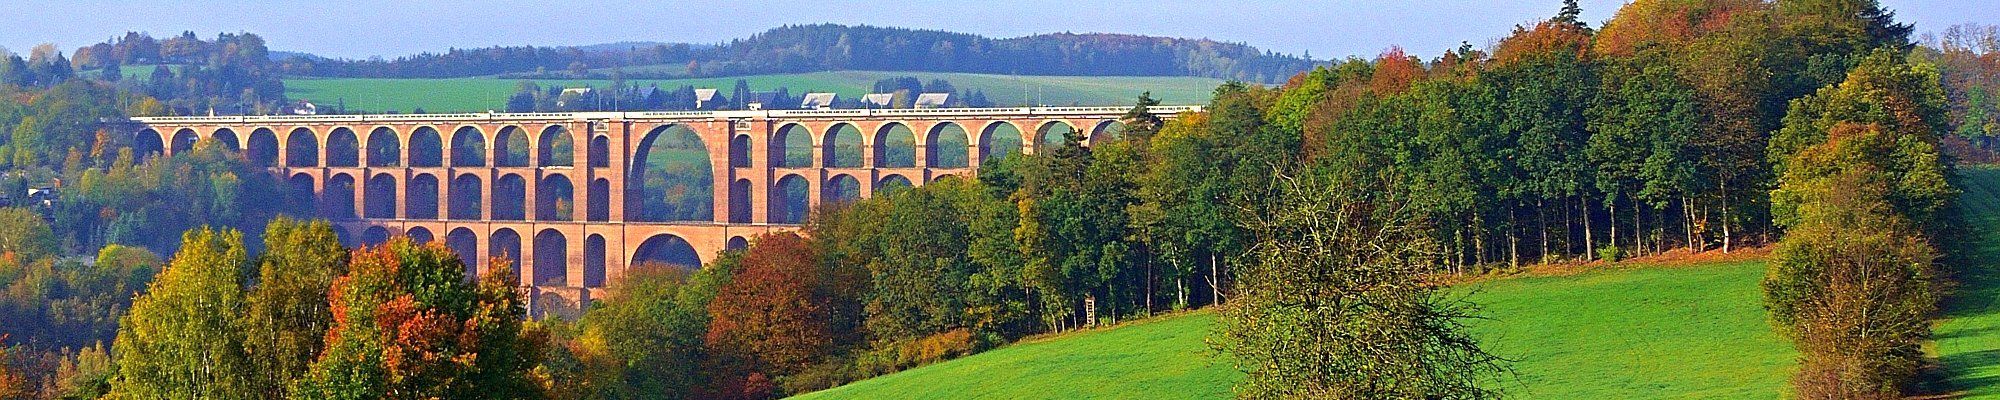 Panoramareise durch das Vogtland - die Göltzschtalbrücke © Jürgen auf Pixabay